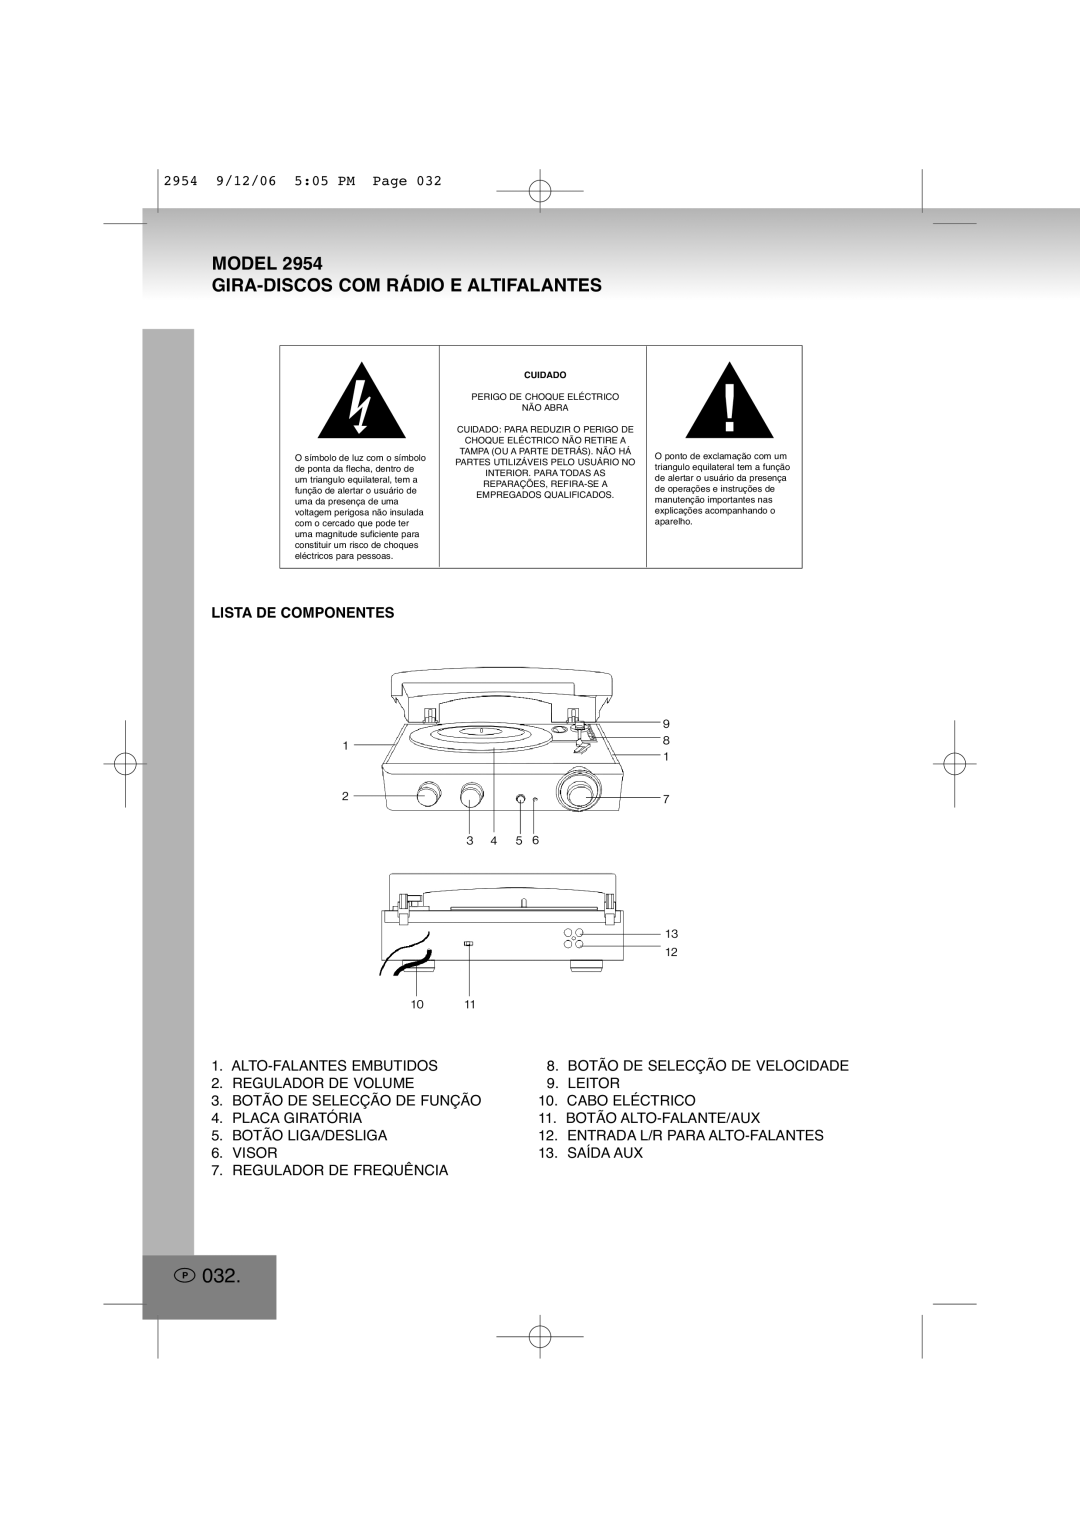 Elta 2954 manual P032, Model Gira-Discoscom Rádio E Altifalantes, Lista De Componentes 